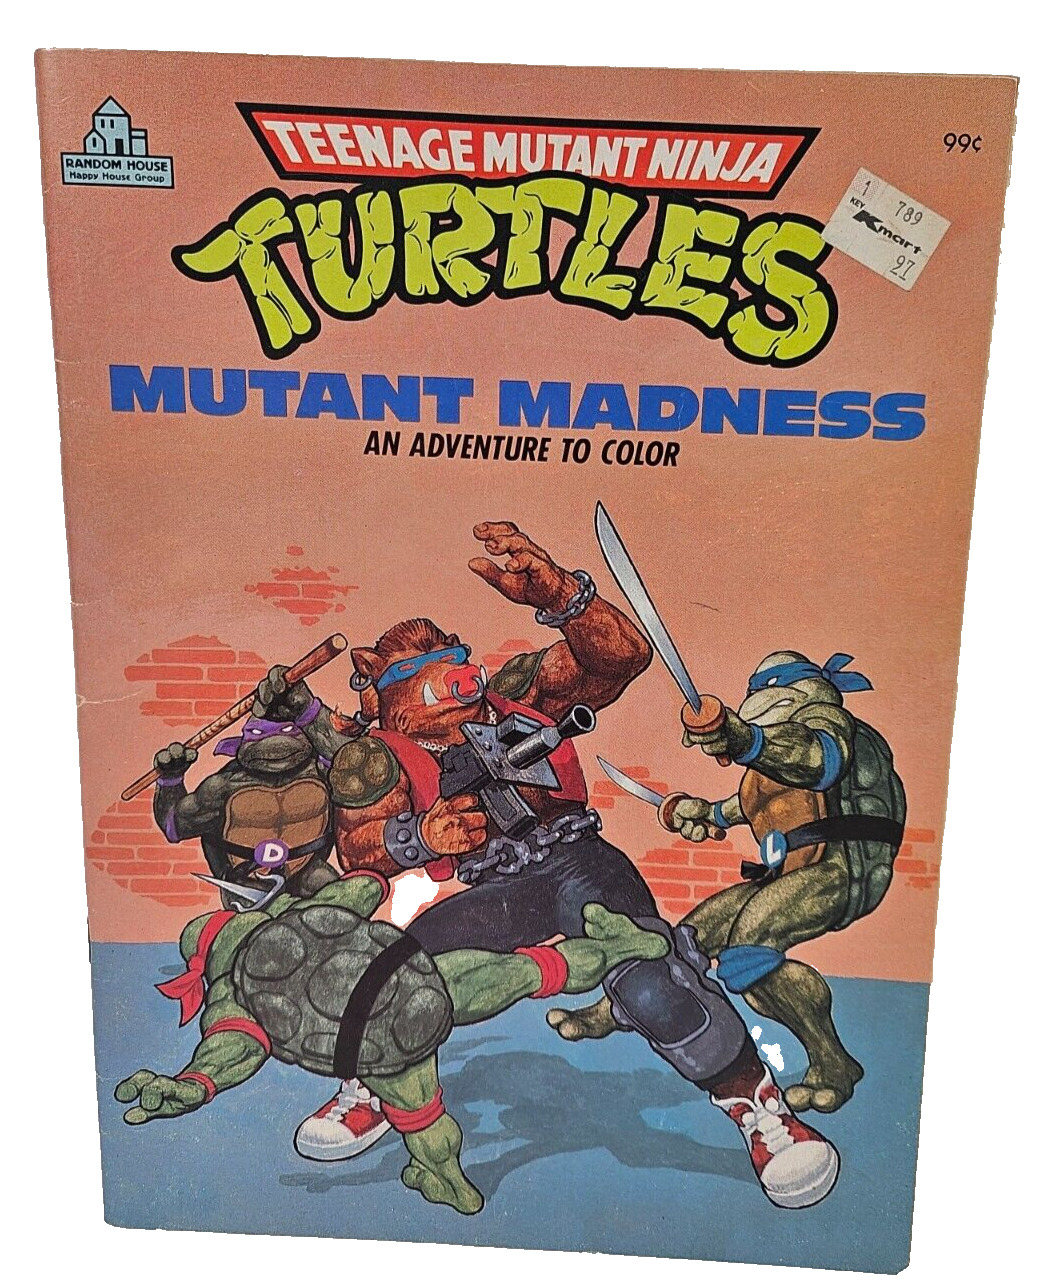 Vtg 1988 Teenage Mutant Ninja Turtles MUTANT MADNESS Coloring Book NEW UNUSED